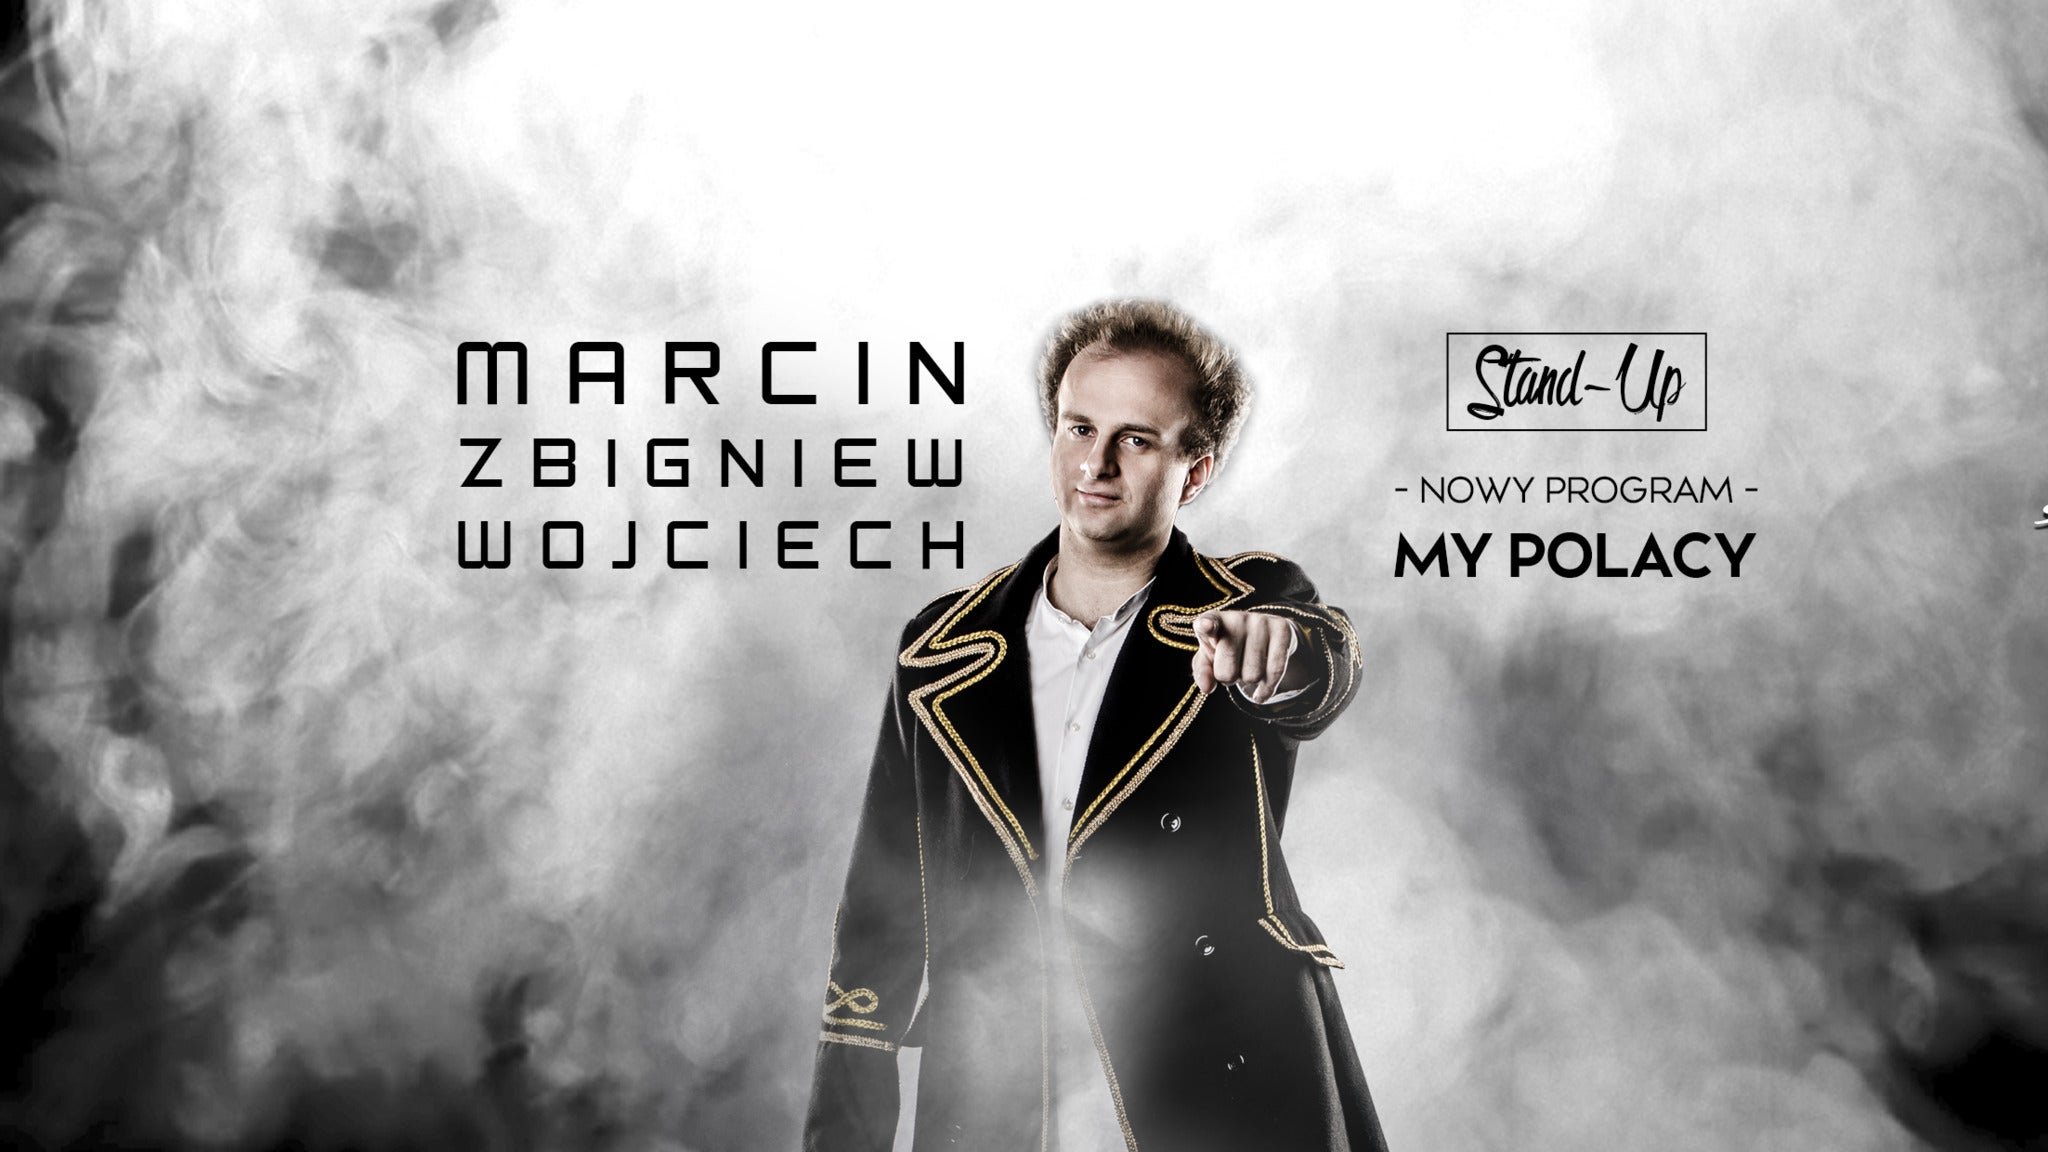 "My Polacy" Marcin Zbigniew Wojciech Stand-up